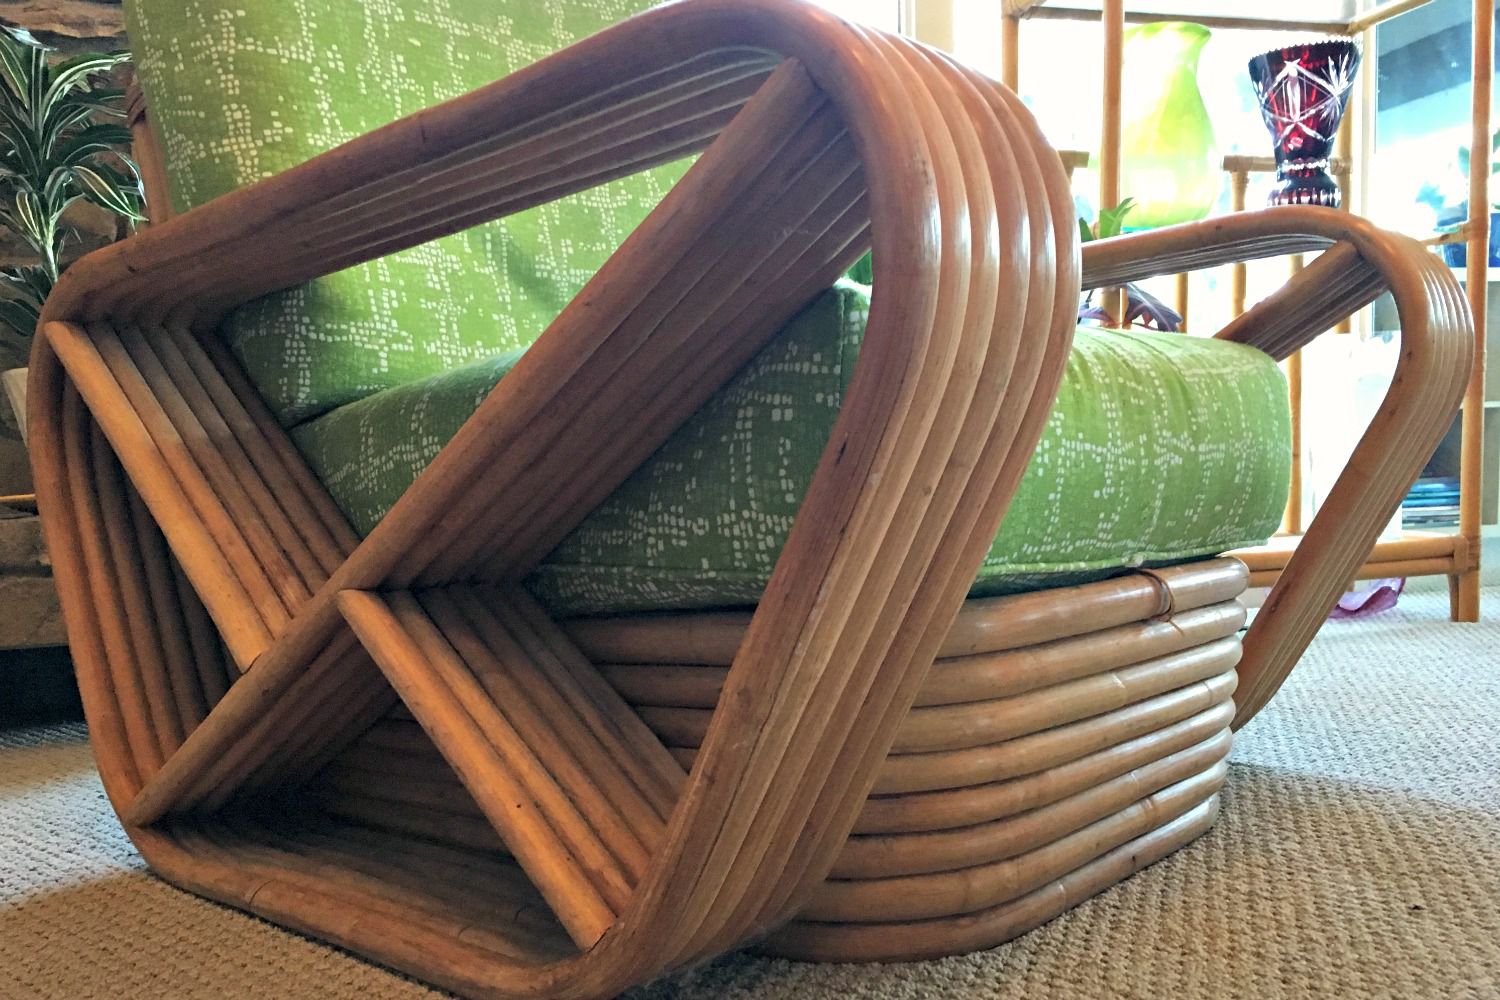 Reed rattan furniture